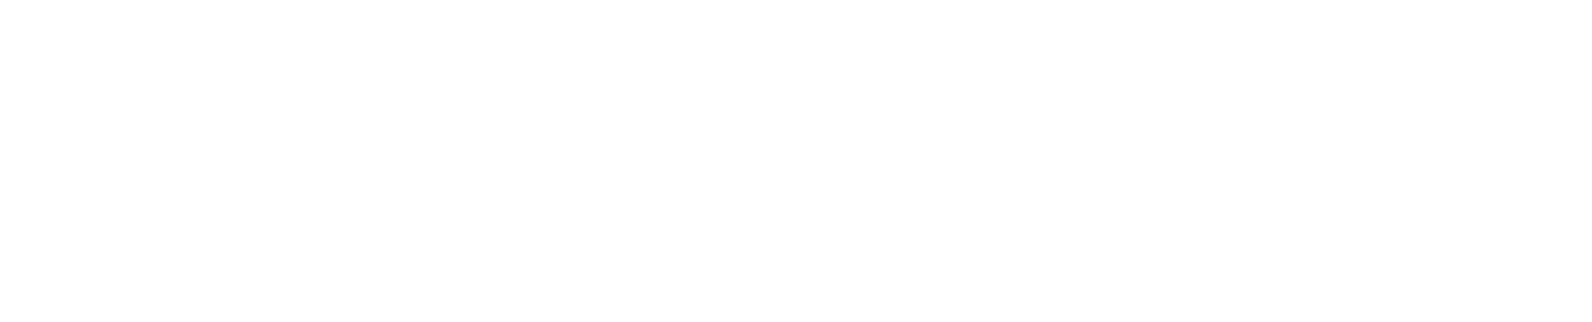 Adecoagro logo large for dark backgrounds (transparent PNG)